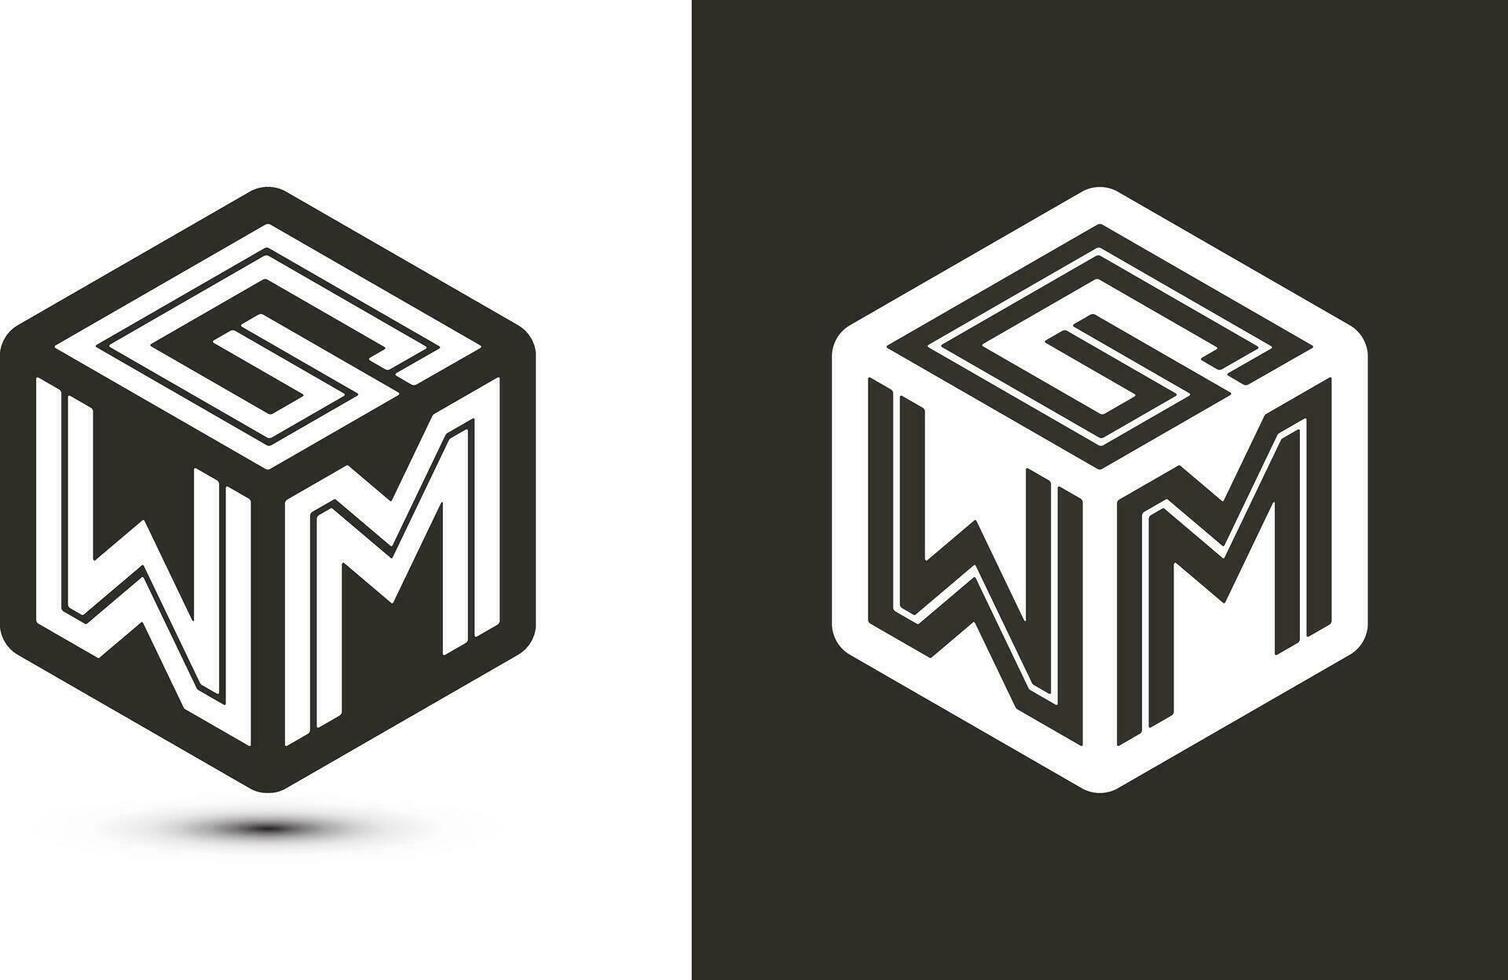 gwm brief logo ontwerp met illustrator kubus logo, vector logo modern alfabet doopvont overlappen stijl.